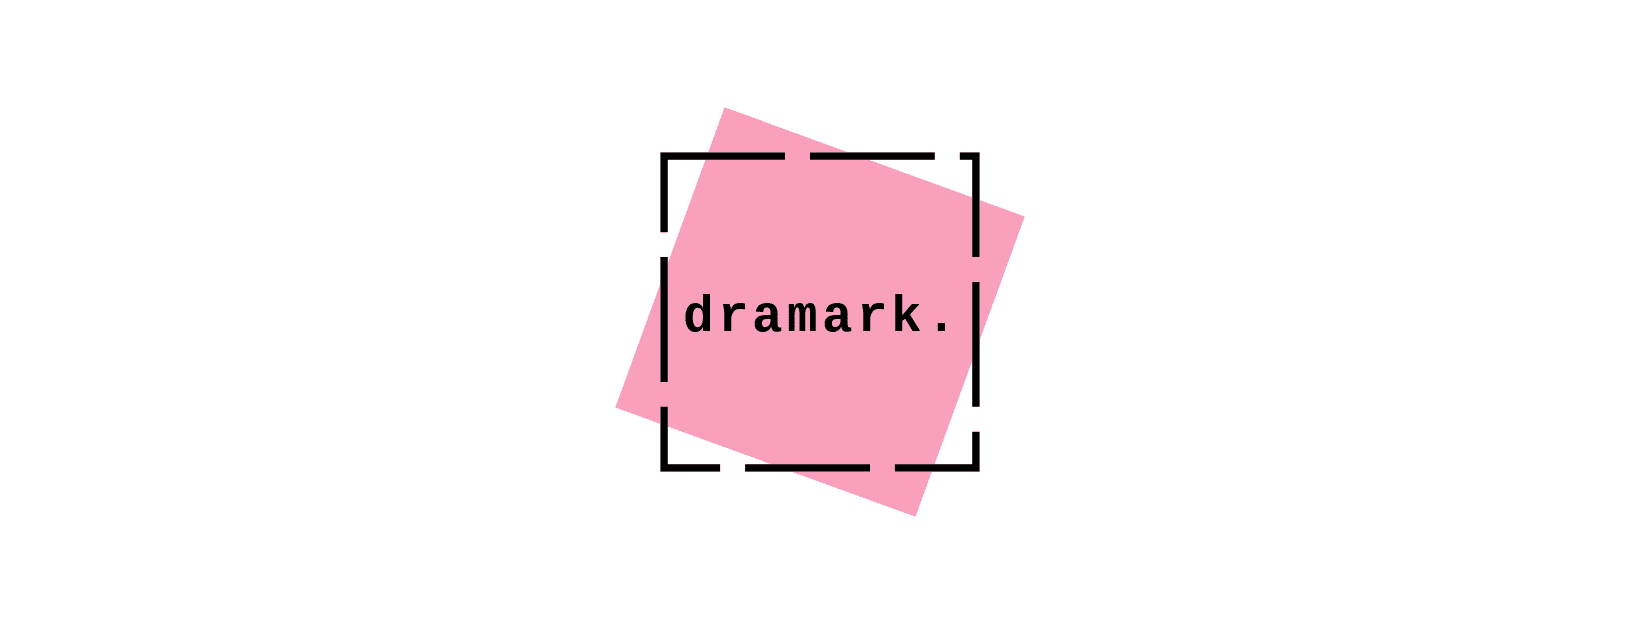 dramark.【ドラマーク】韓国ドラマのアクセサリー販売